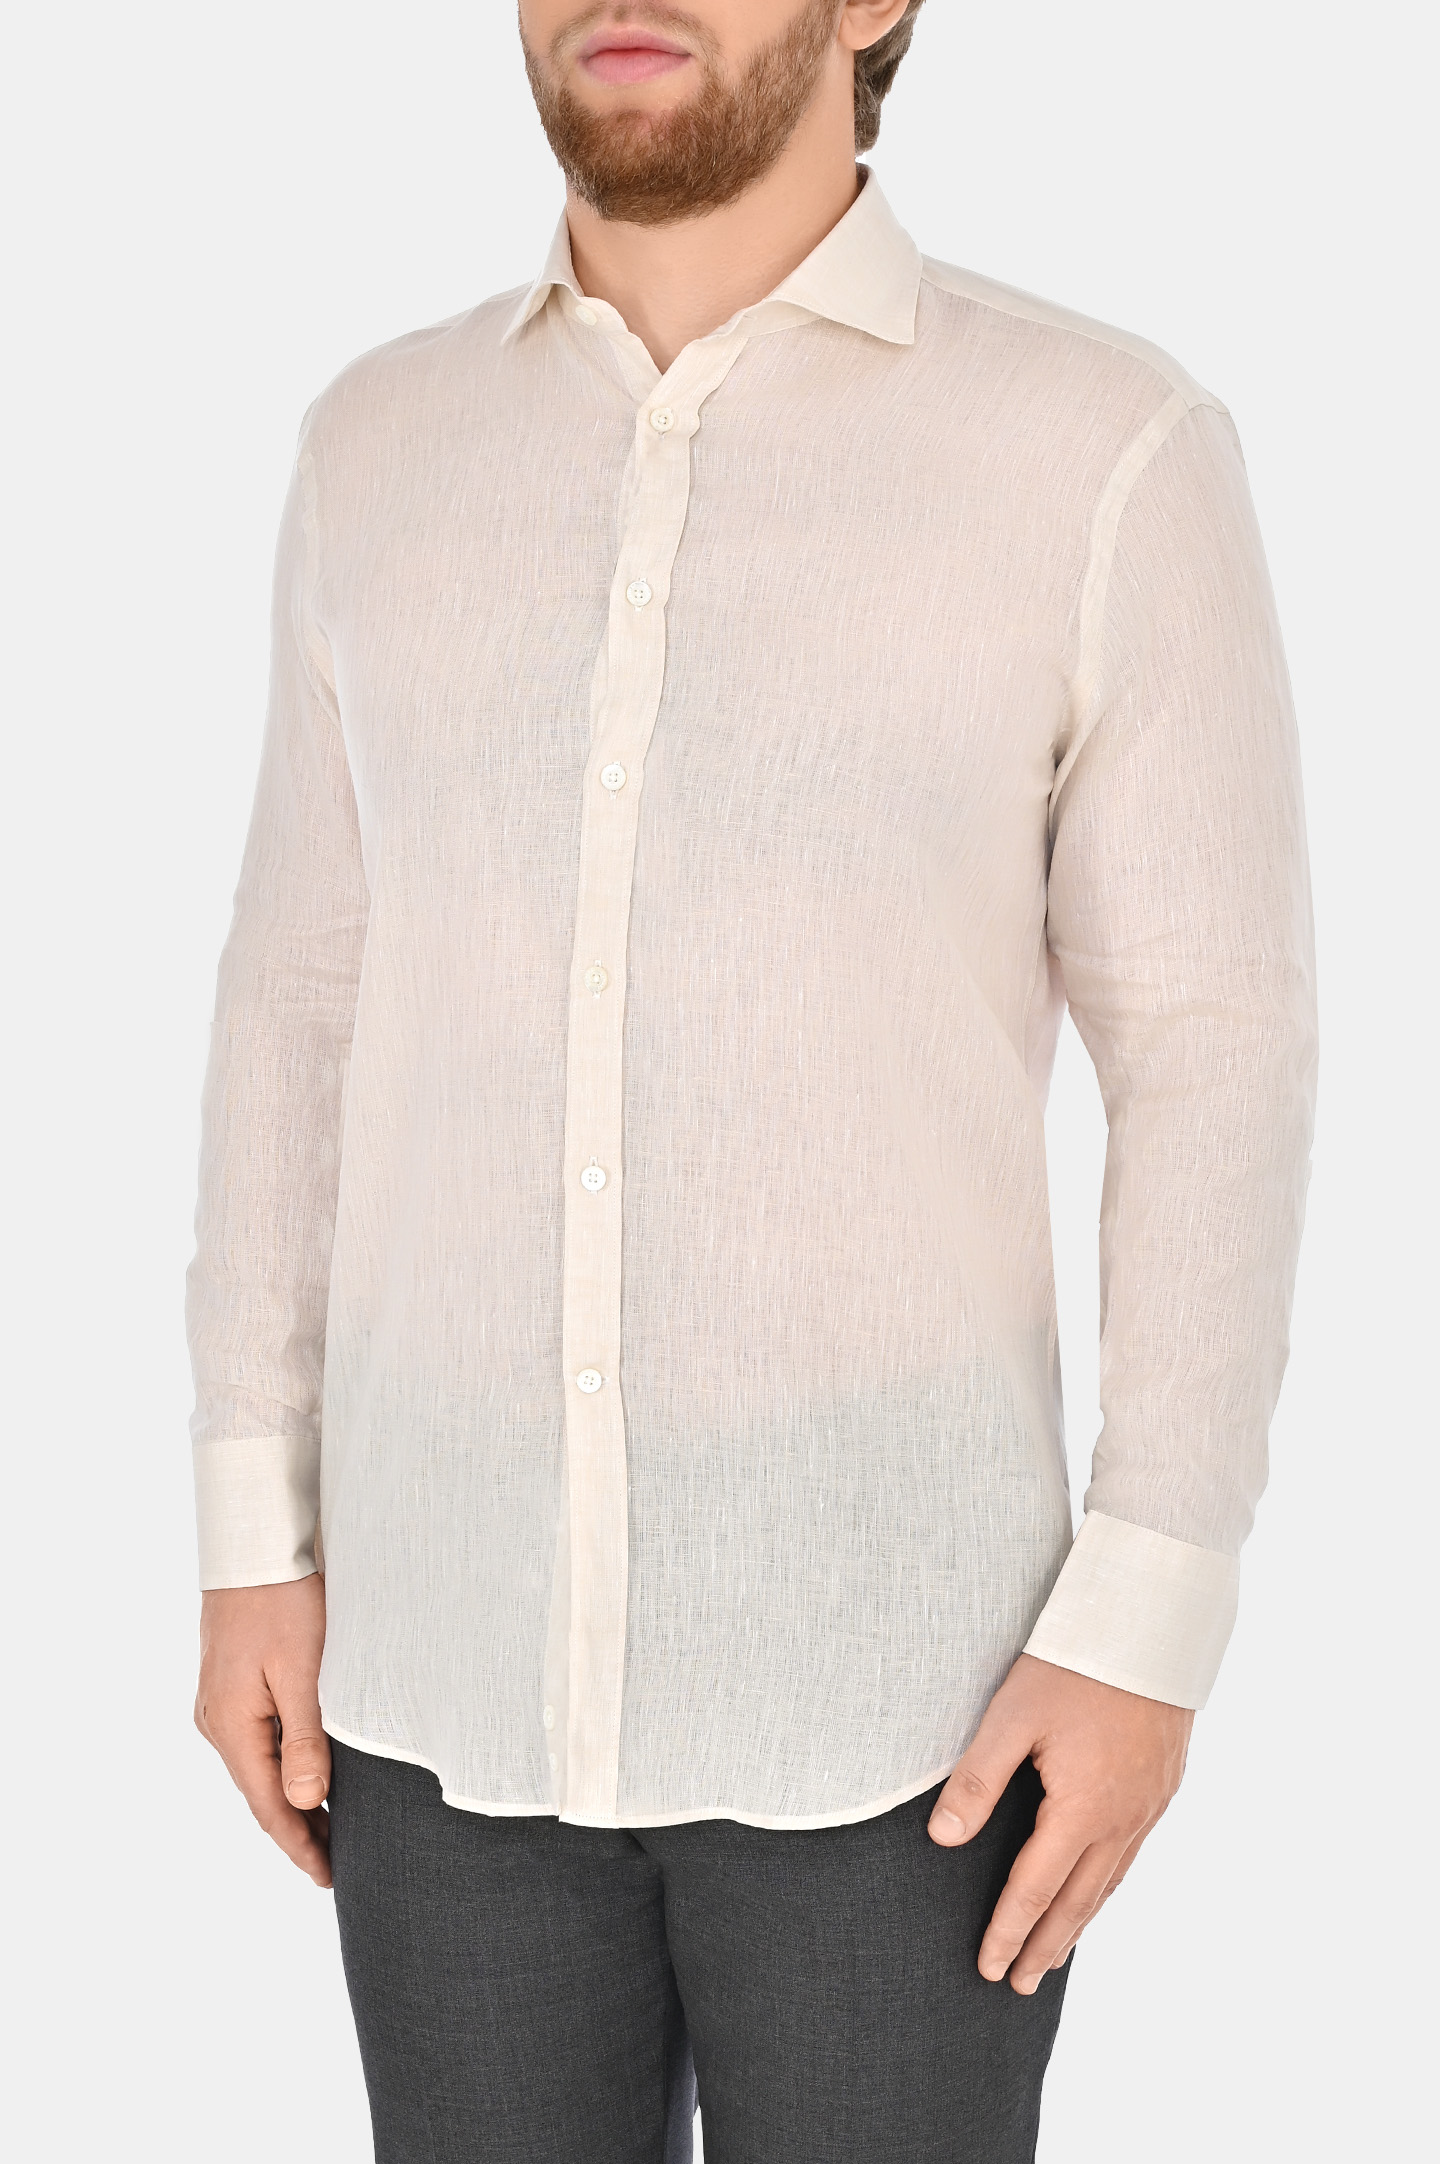 Льняная классическая рубашка CANALI GL03099 L7B1, цвет: Светло-бежевый, Мужской